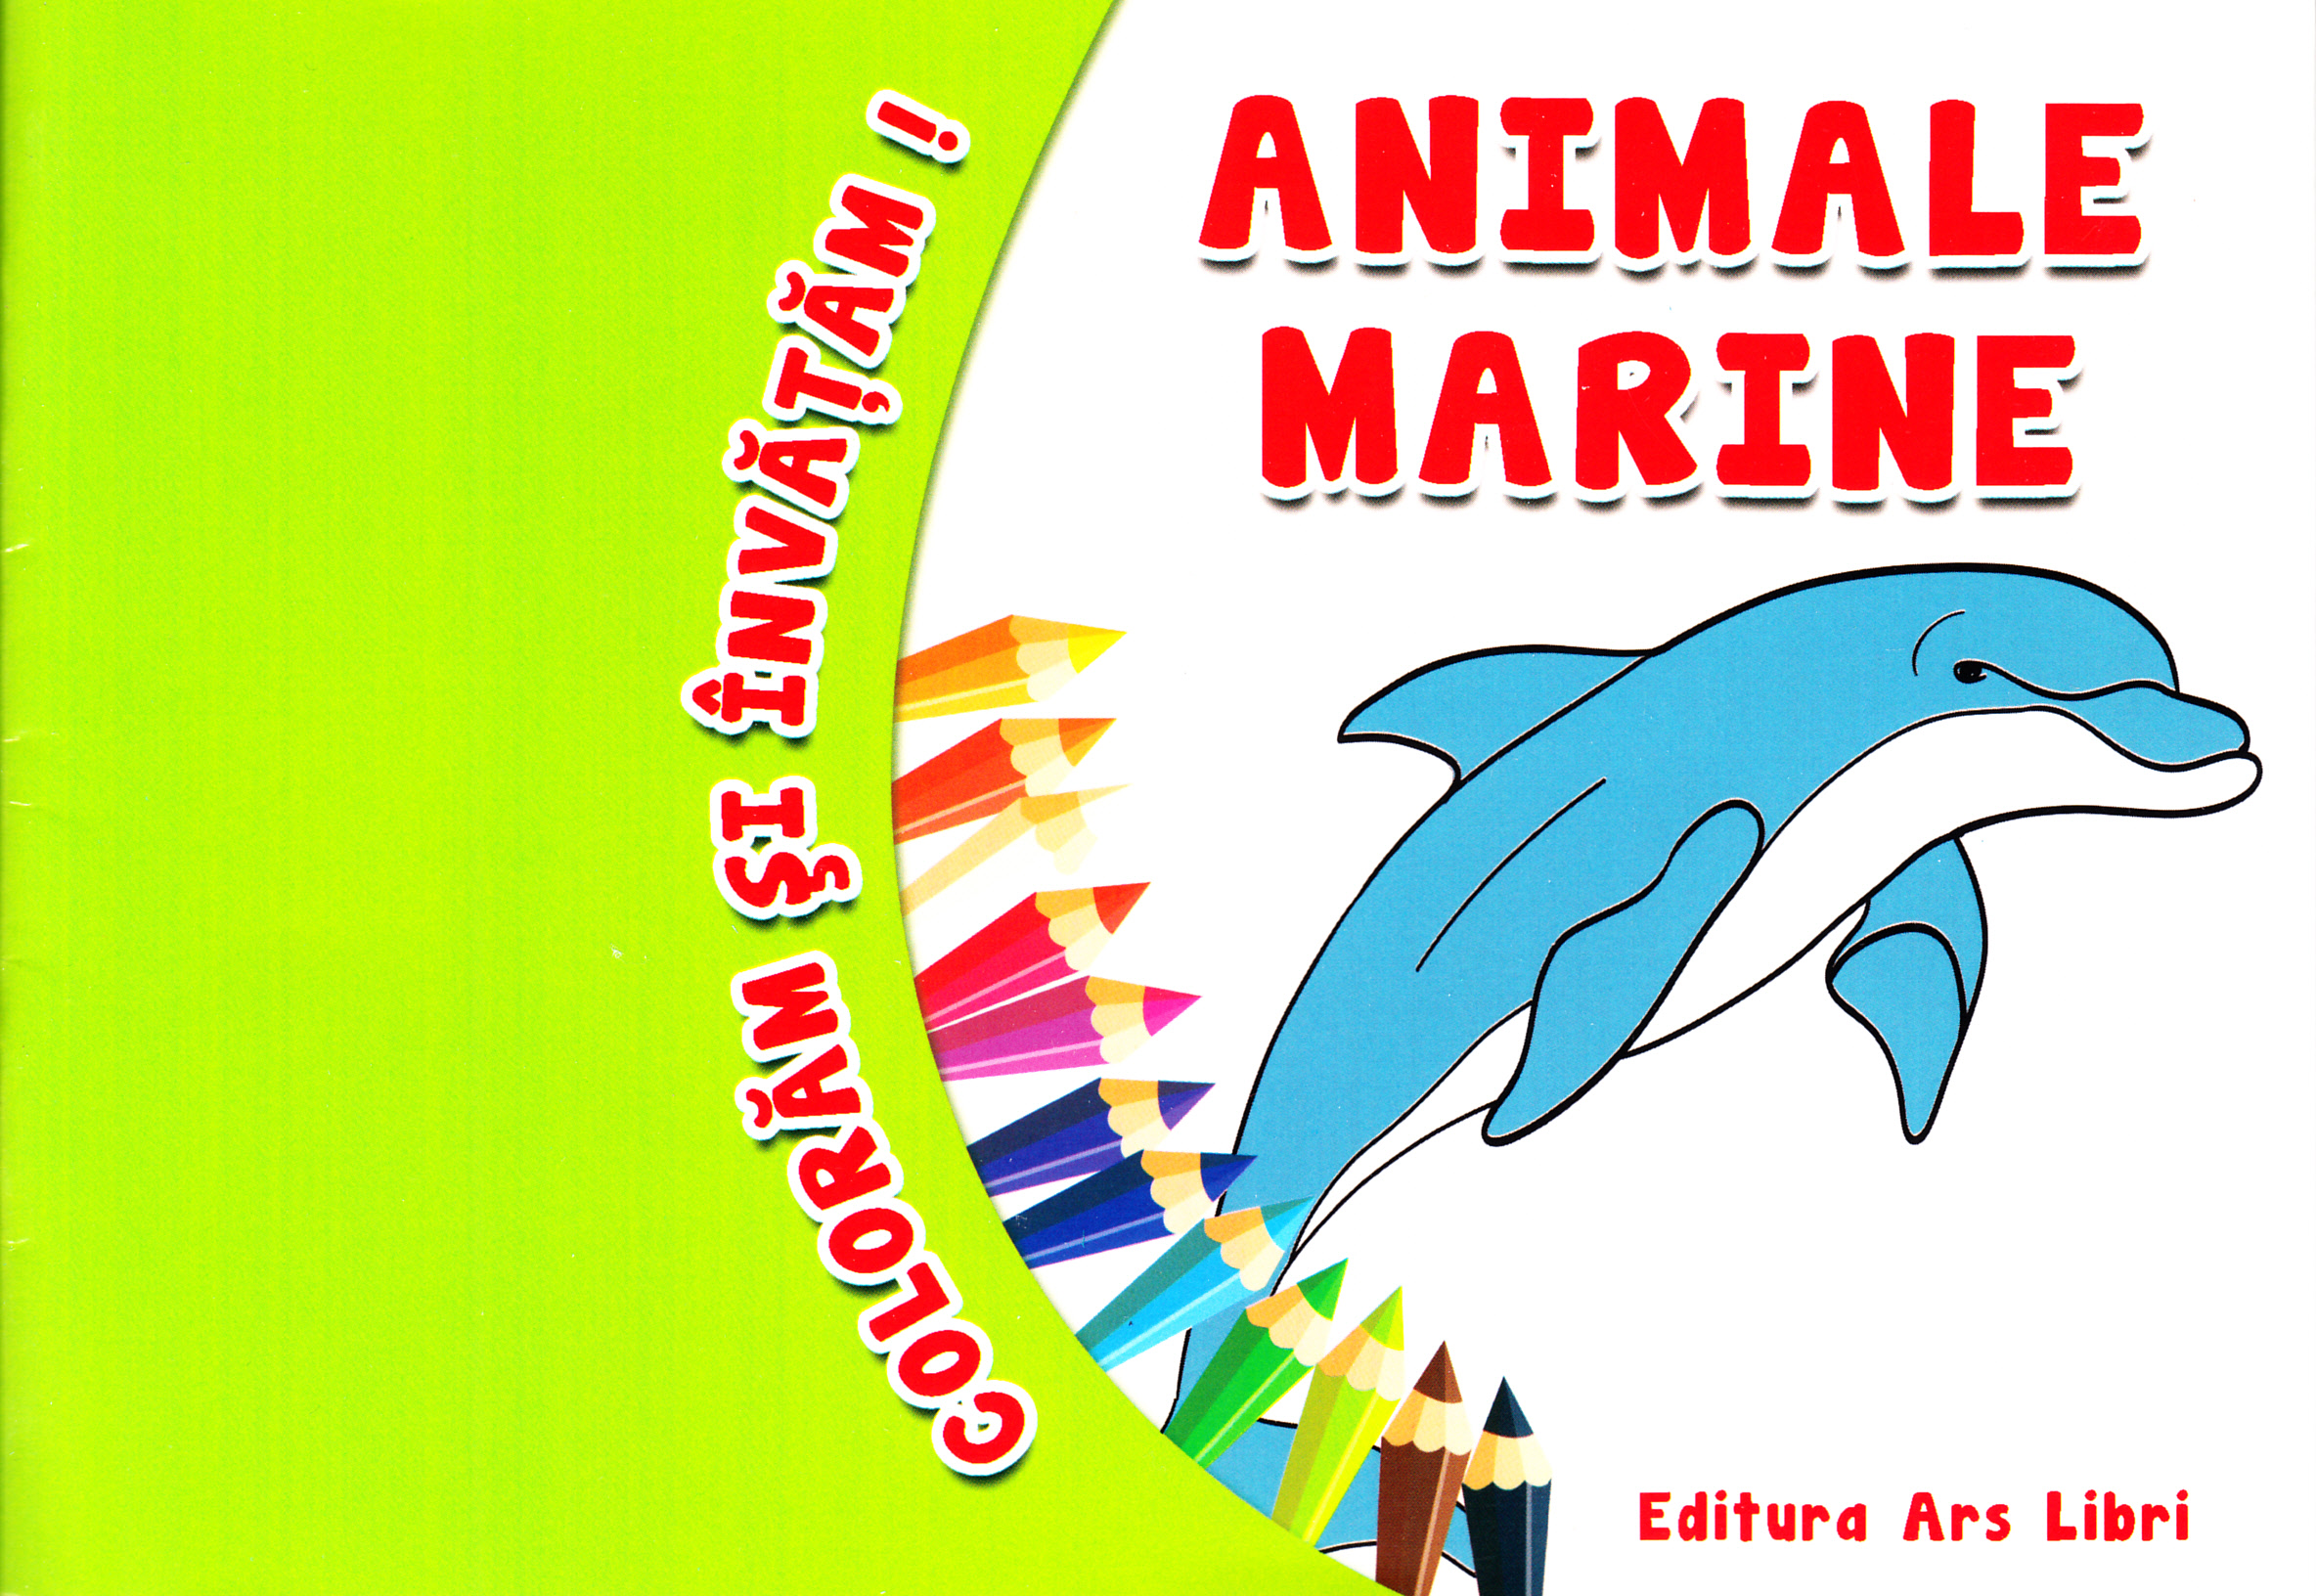 Animale marine - Coloram si invatam!